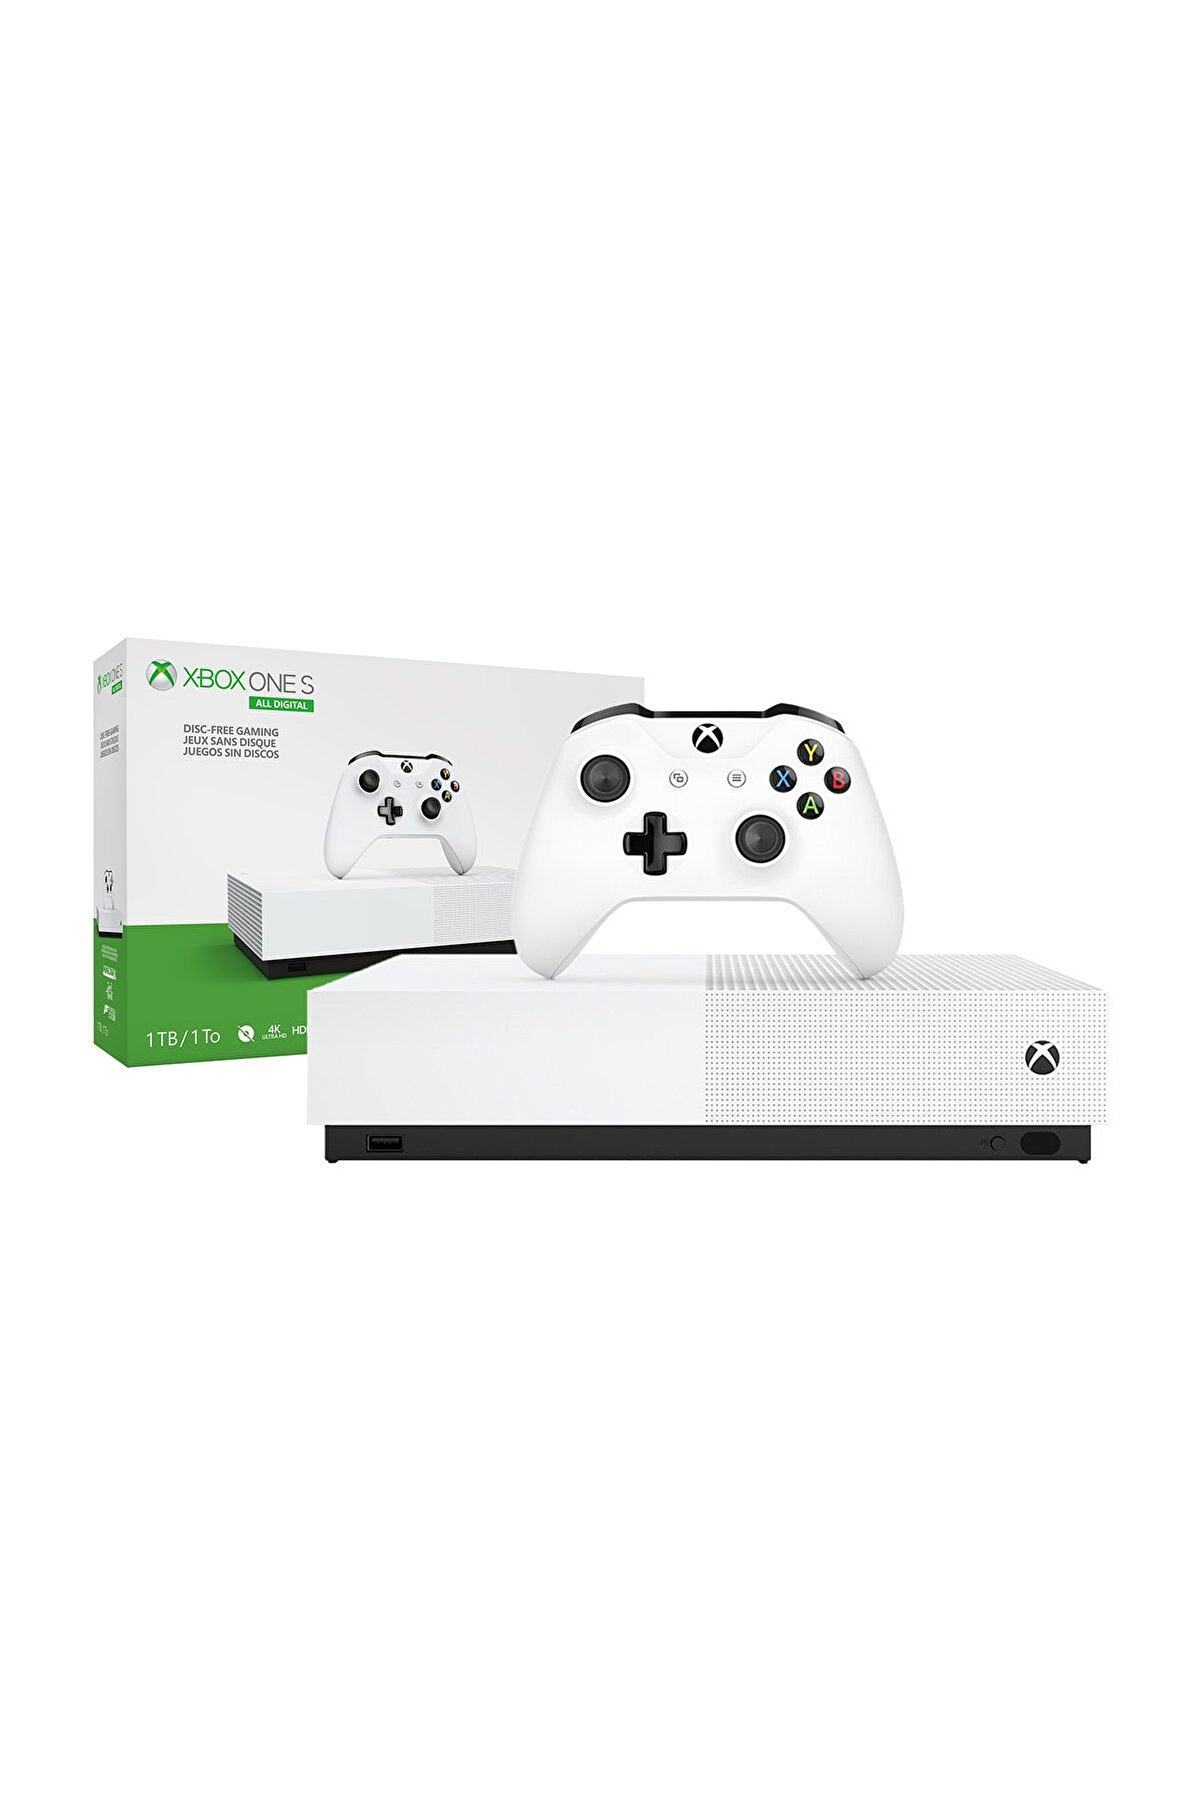 Microsoft Xbox One S 1 TB All-Digital Edition 4K Ultra HD Oyun Konsolu + 3 Ön Yüklü Oyun + 1 Yıllık EA Access